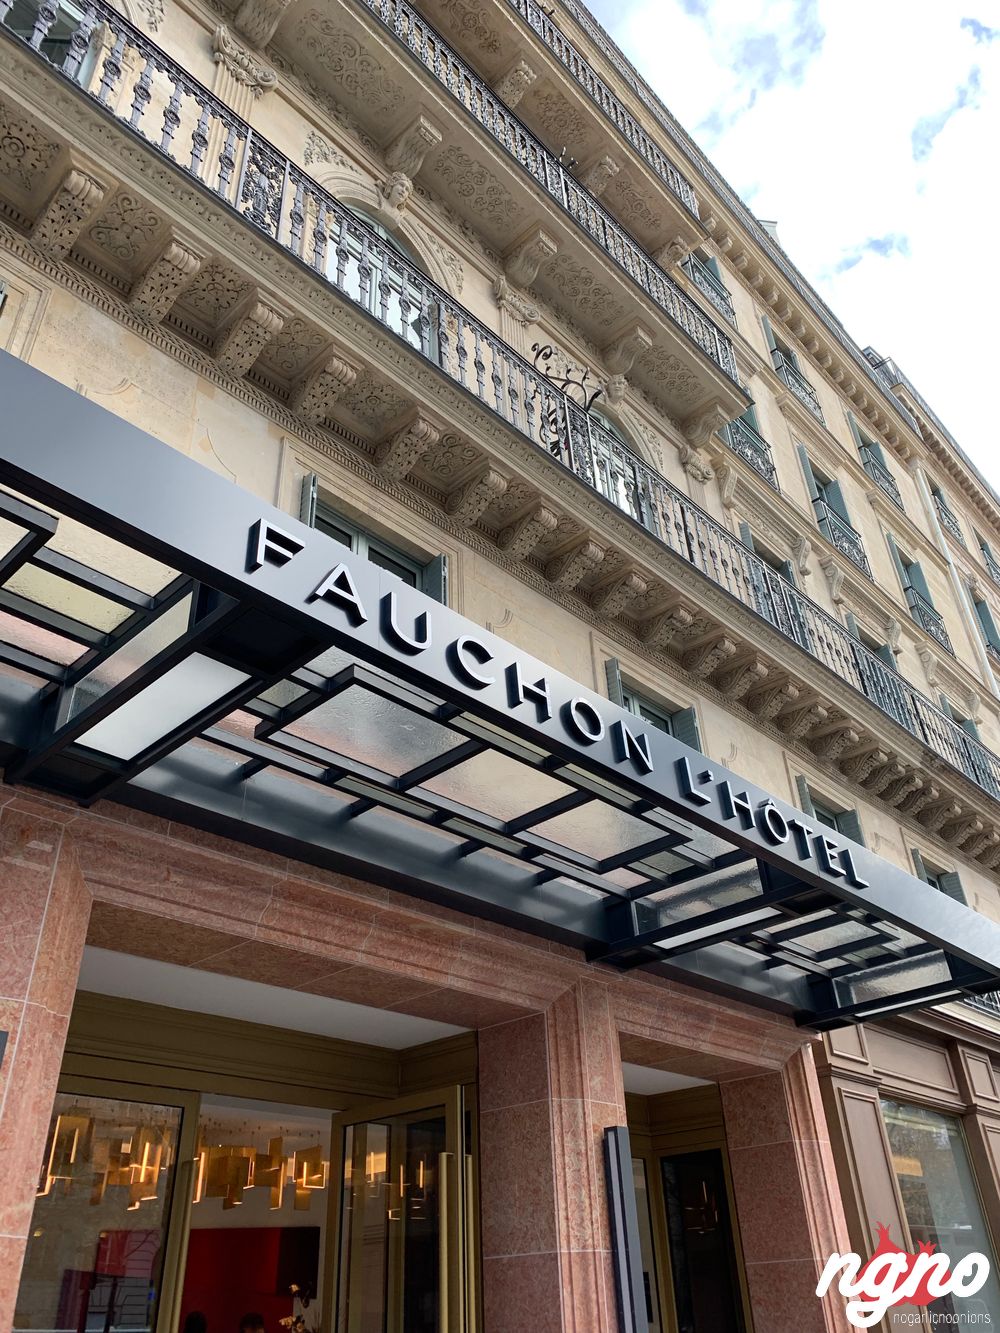 fauchon-l-hotel-paris-nogarlicnoonions-802018-12-17-10-07-45